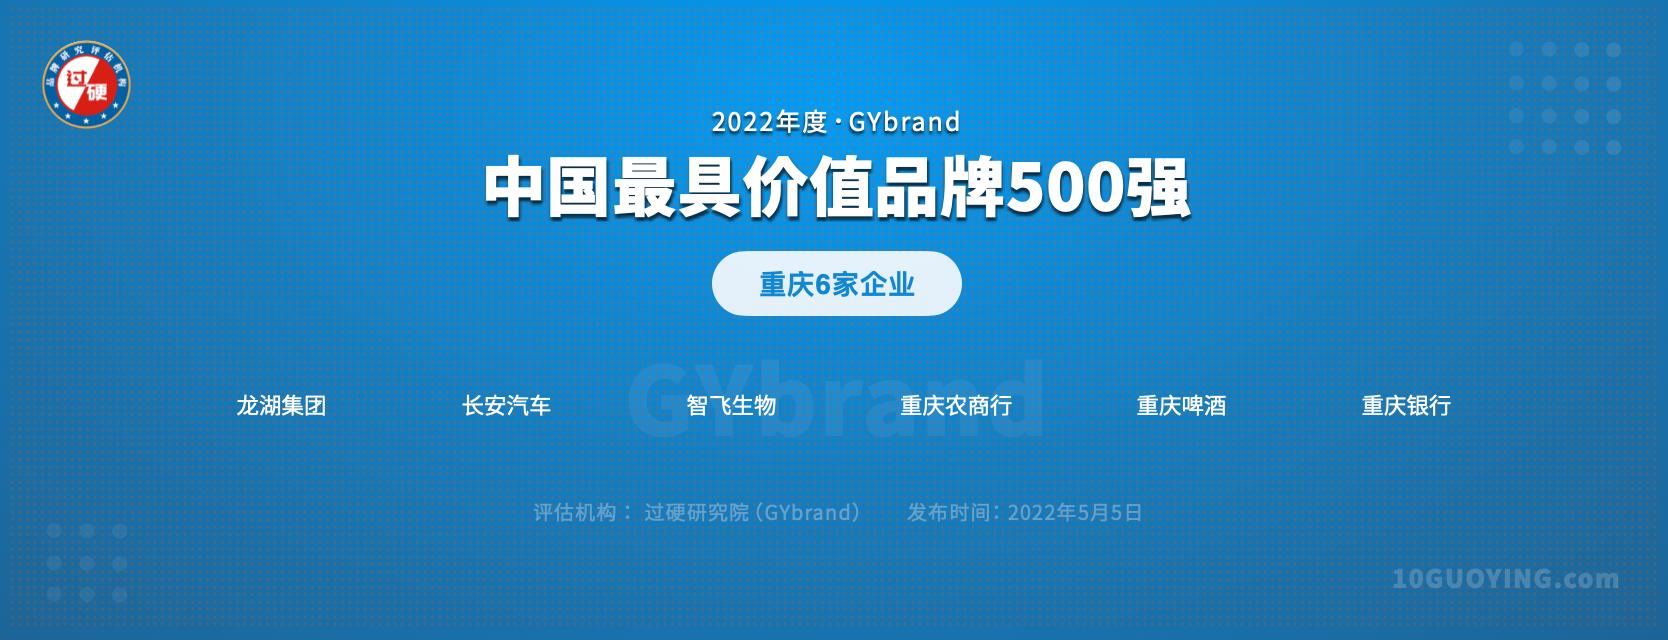 重庆有多少中国500强企业 重庆的中国500强企业名单一览表